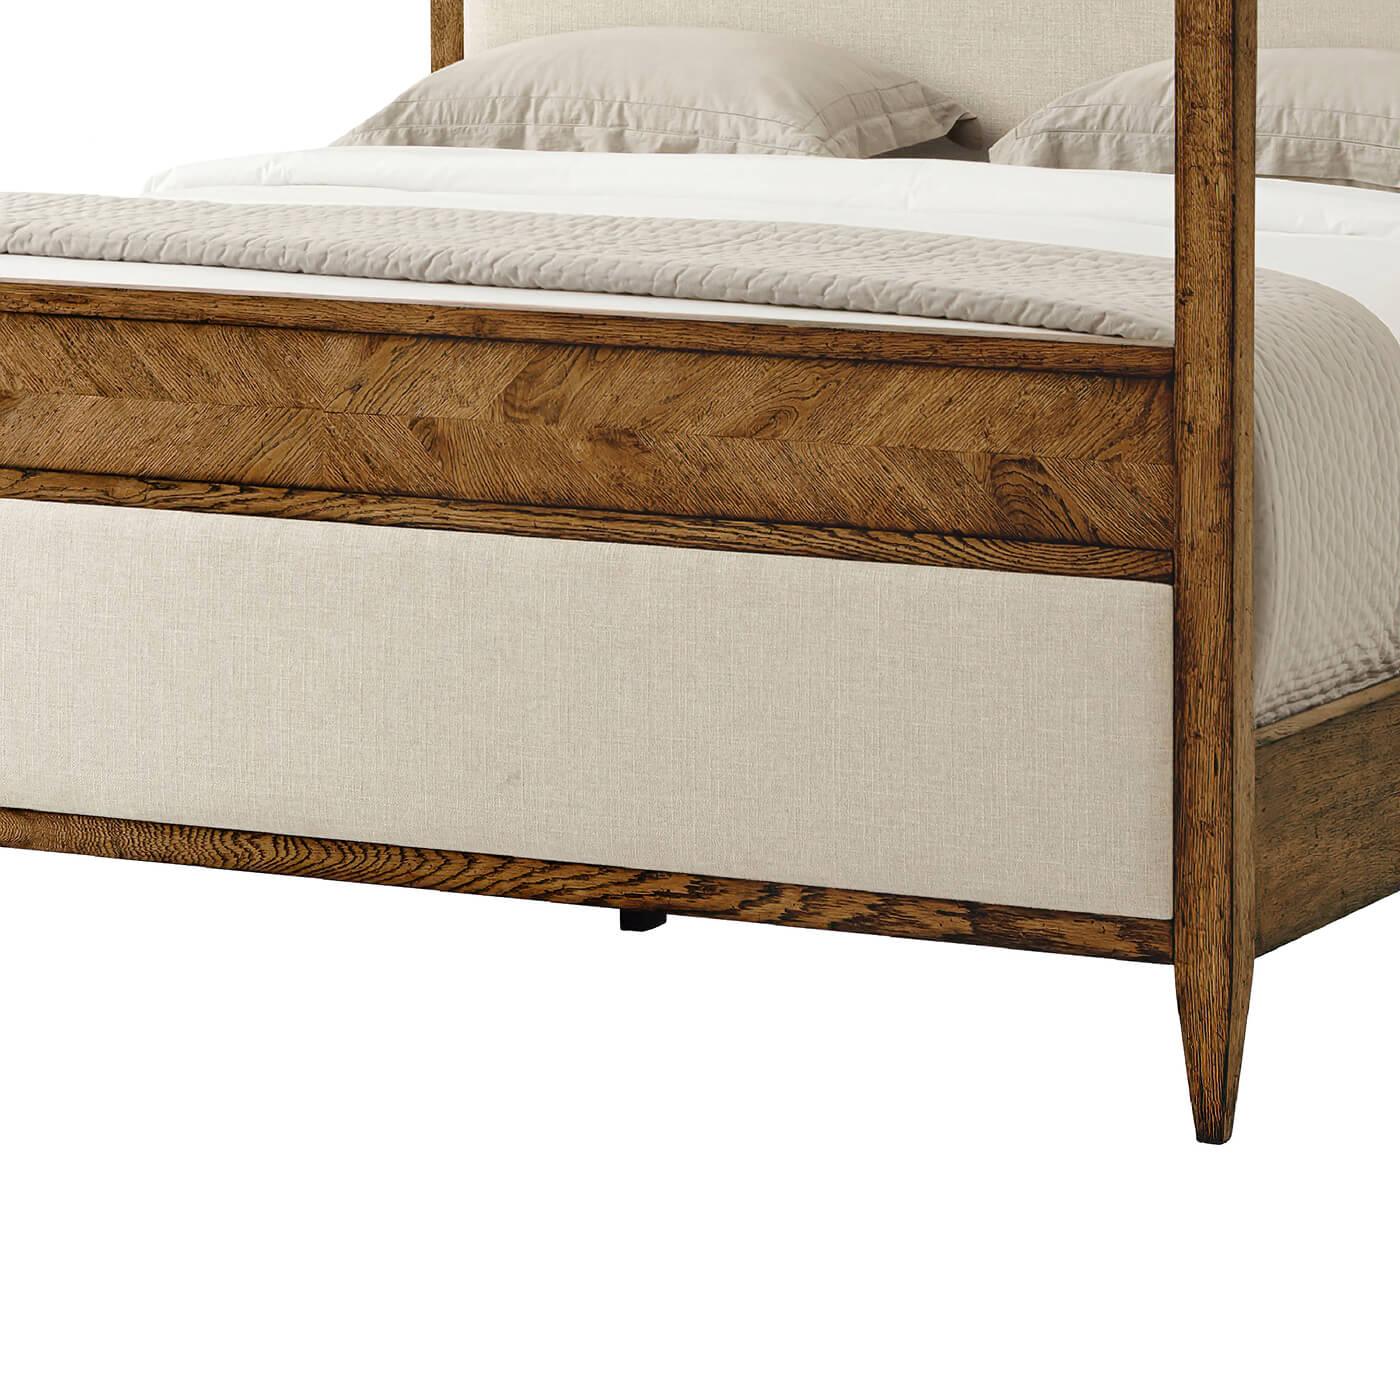 Ein modernes, rustikales Himmelbett aus Eichenholz in der Farbe Dusk. Dieses wunderschön gestaltete Bett besteht aus handgeschnitztem Eichenholz und spiegelnden Fischgrät-Marketerie-Details, die mit einem gepolsterten Paneel am Kopf- und Fußteil